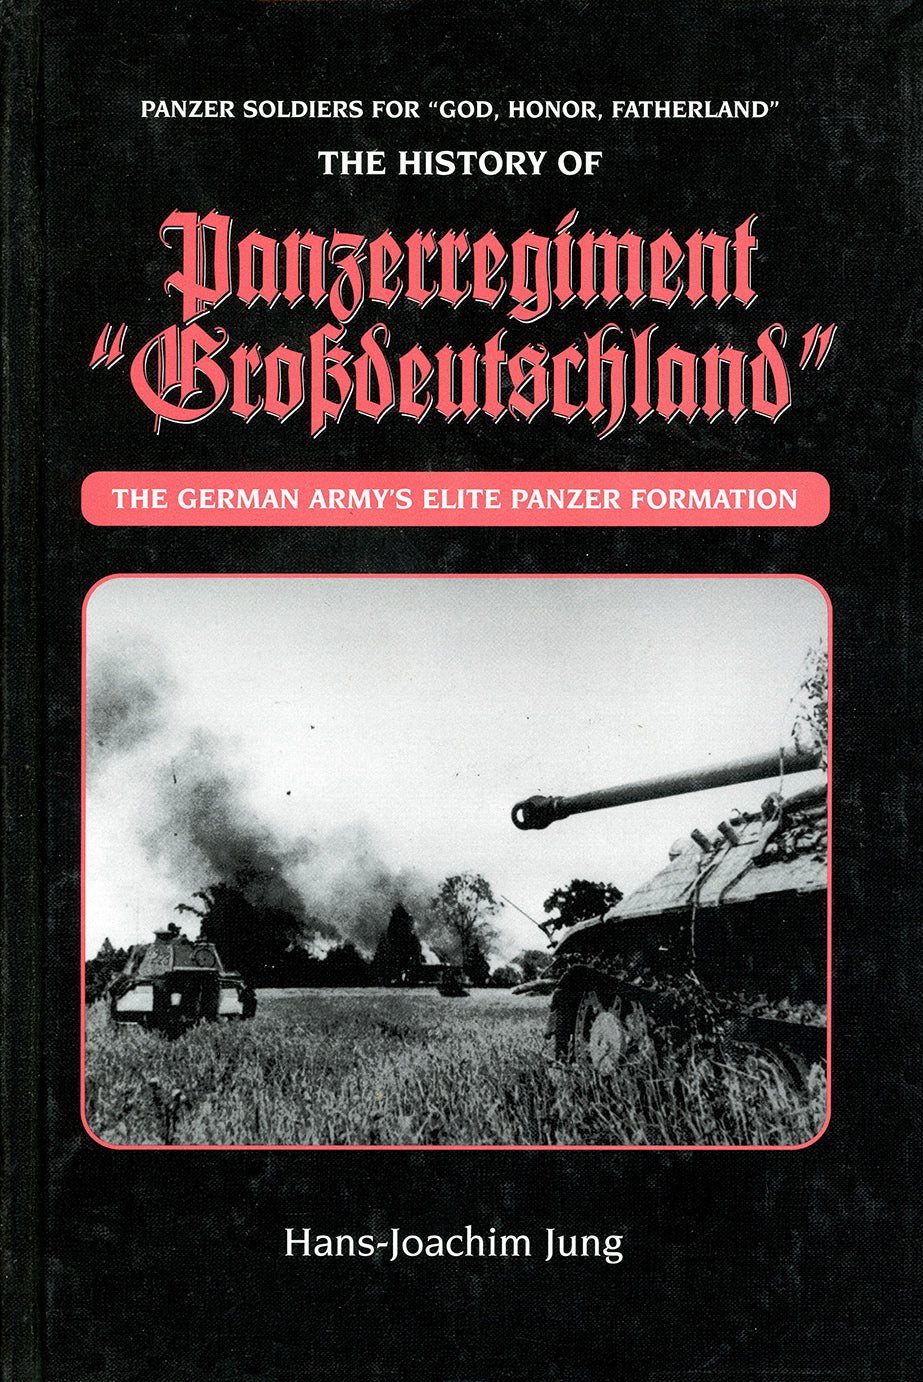 Panzer Soldiers: The History of Panzerregiment “Großdeutschland”